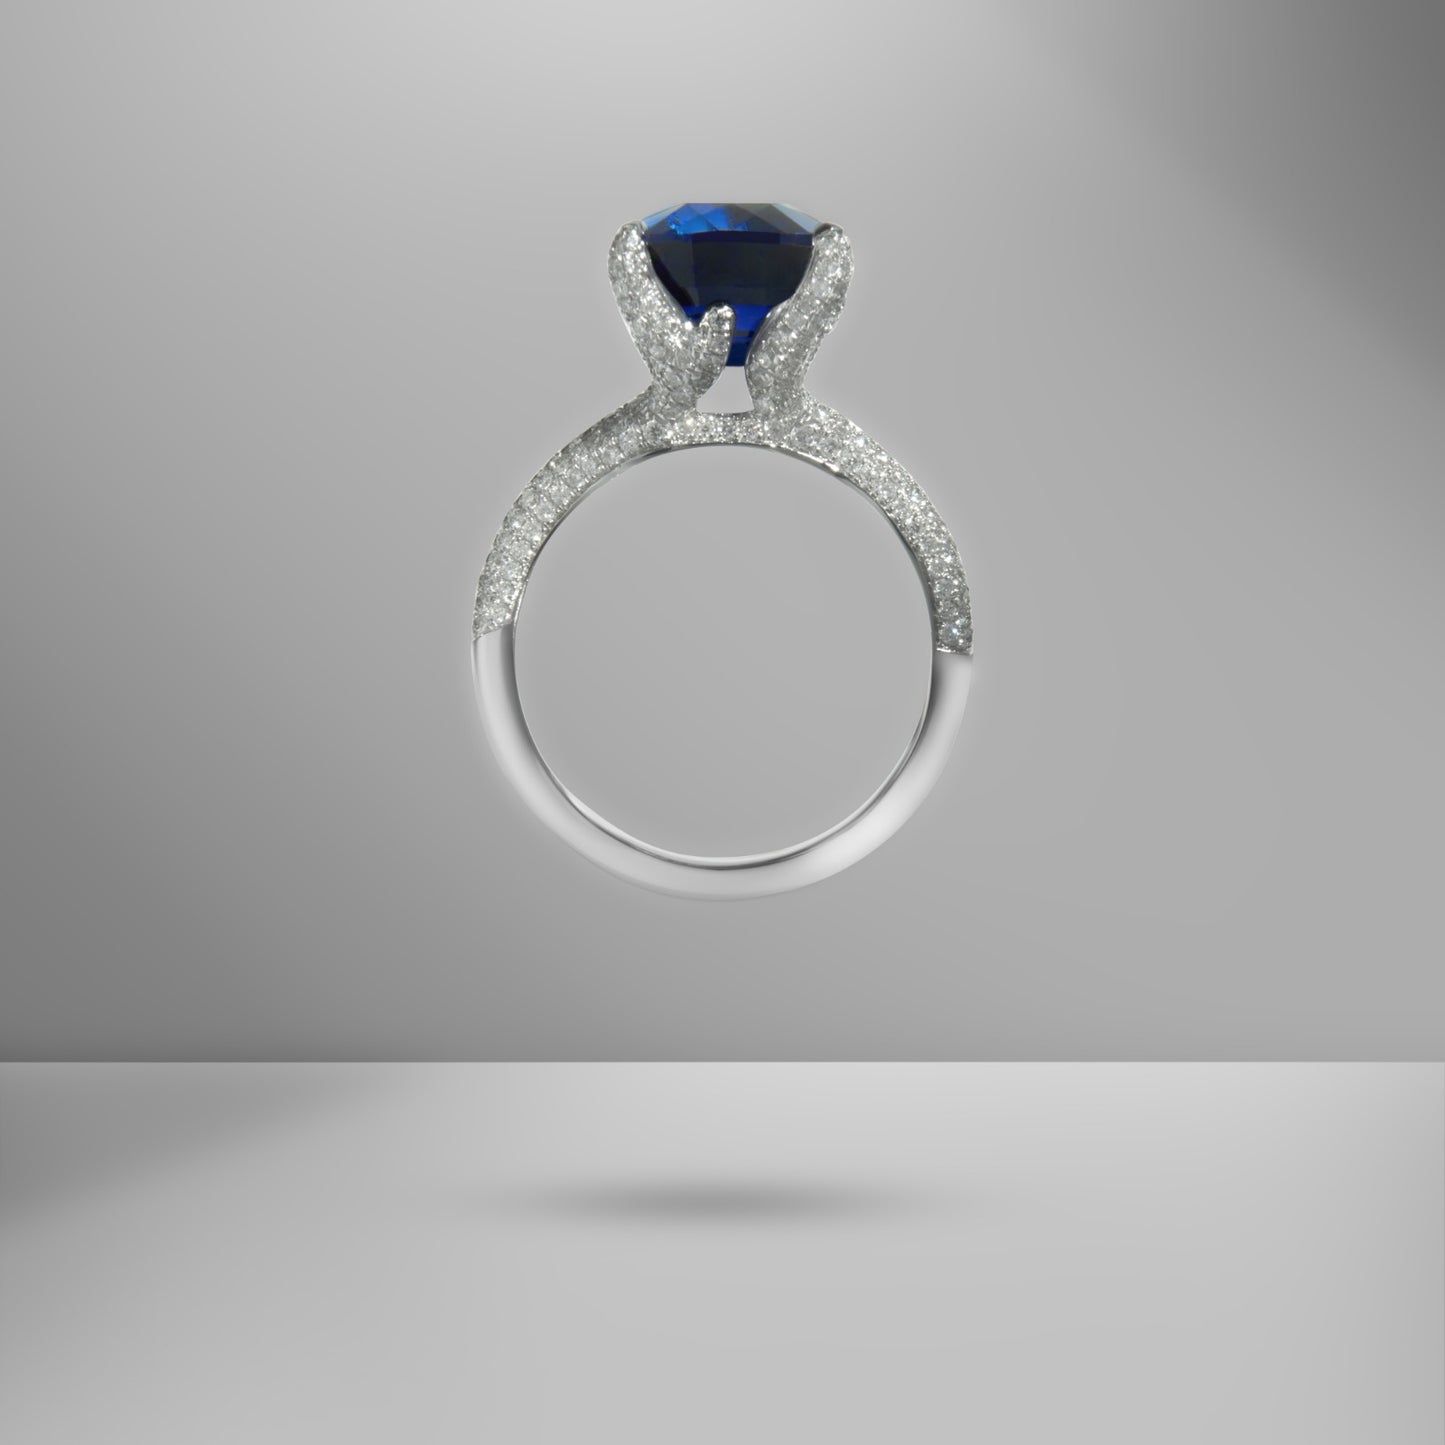 The "Royal" ring